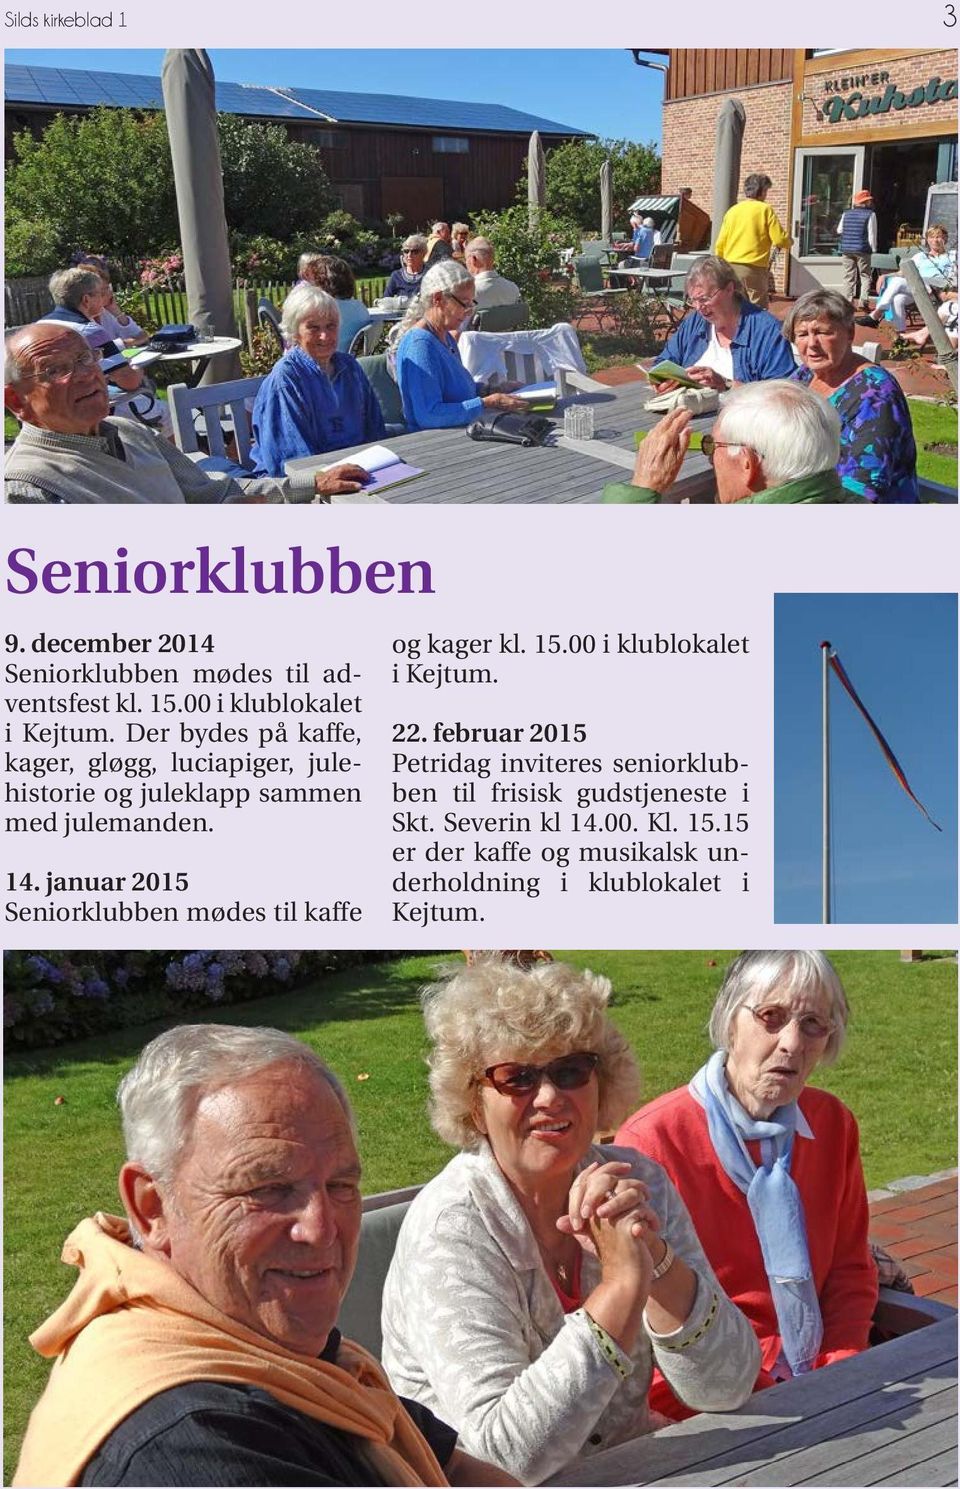 januar 2015 Seniorklubben mødes til kaffe og kager kl. 15.00 i klublokalet i Kejtum. 22.